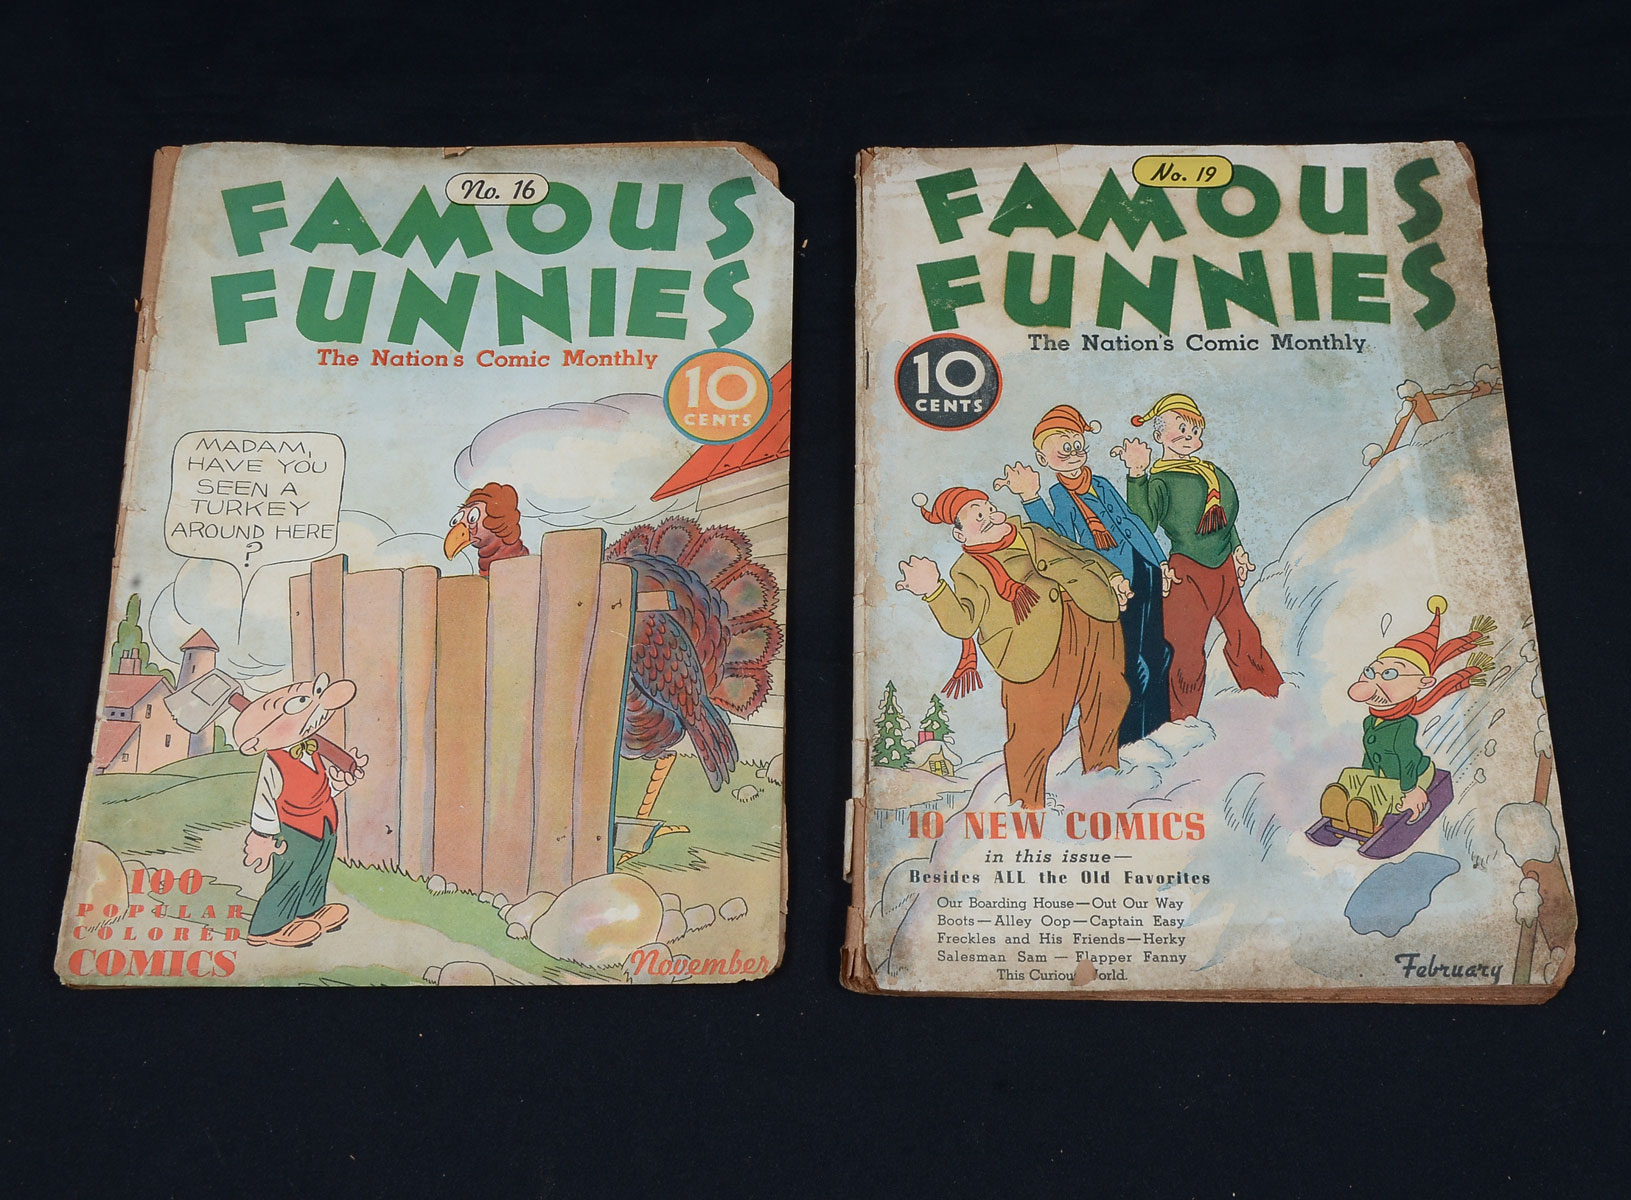 FAMOUS FUNNIES COMICS NO.16, 1936